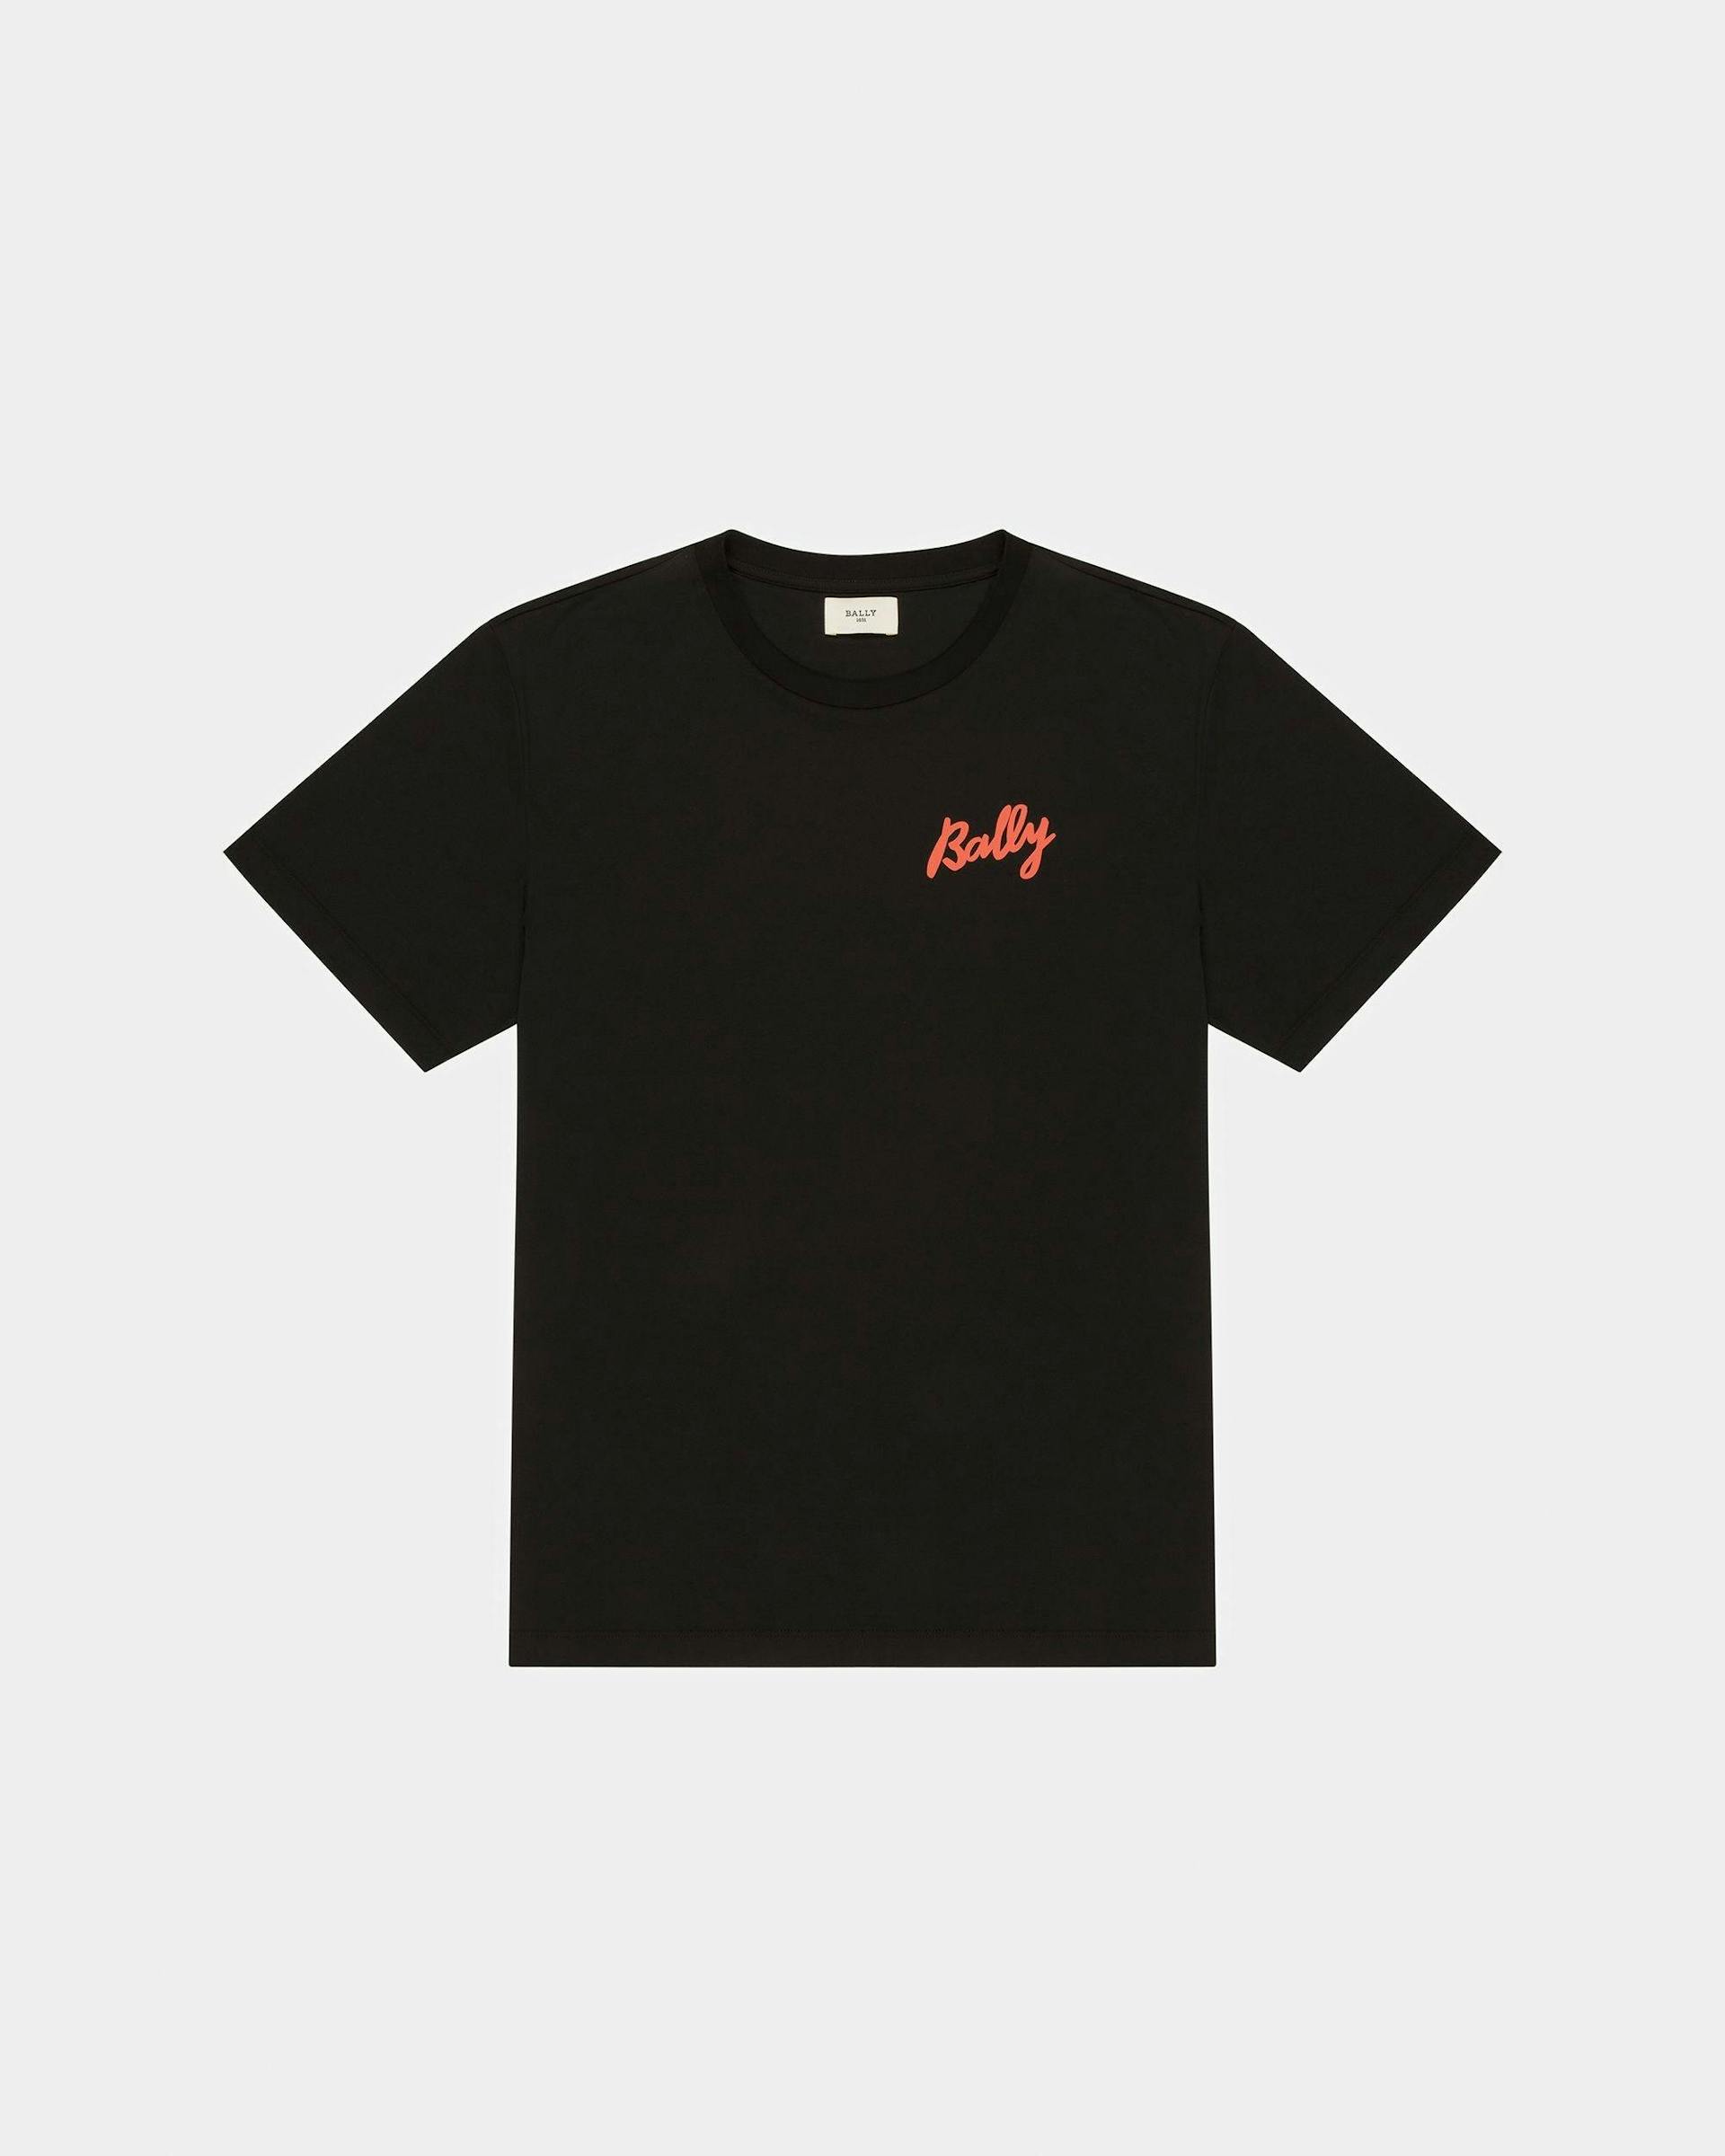 T-Shirt En Coton Noir Et Orange - Homme - Bally - 01